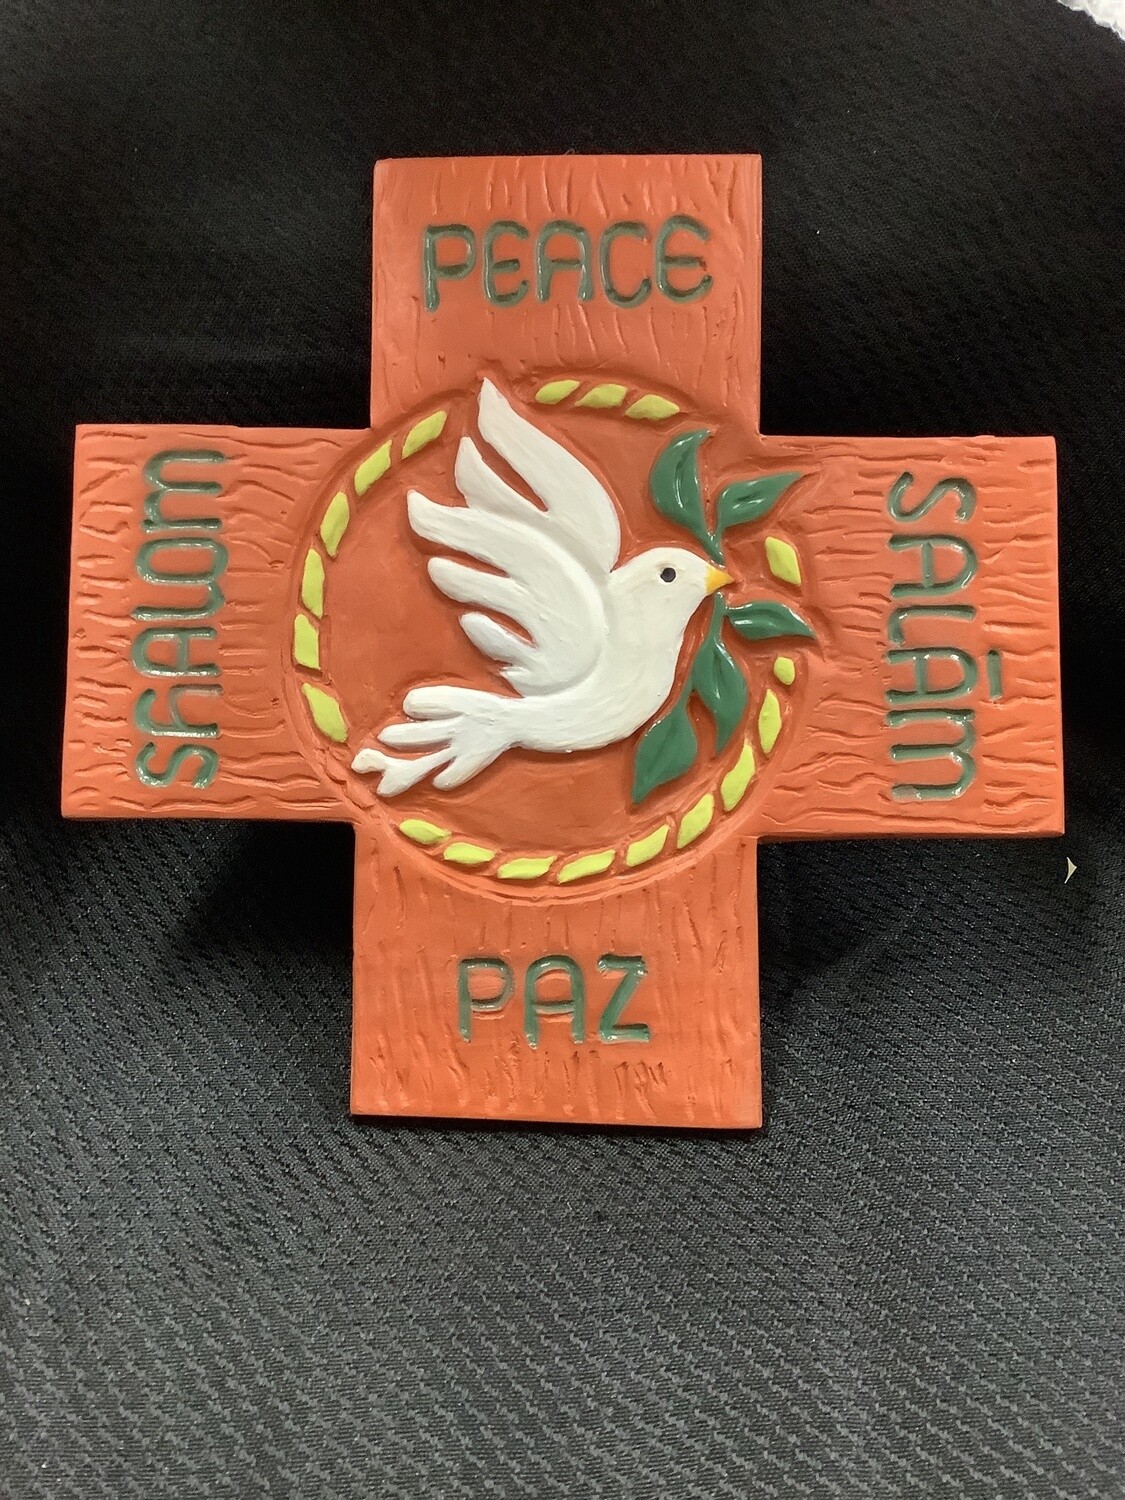 Peace, Cross Shalom, Paz, Salam